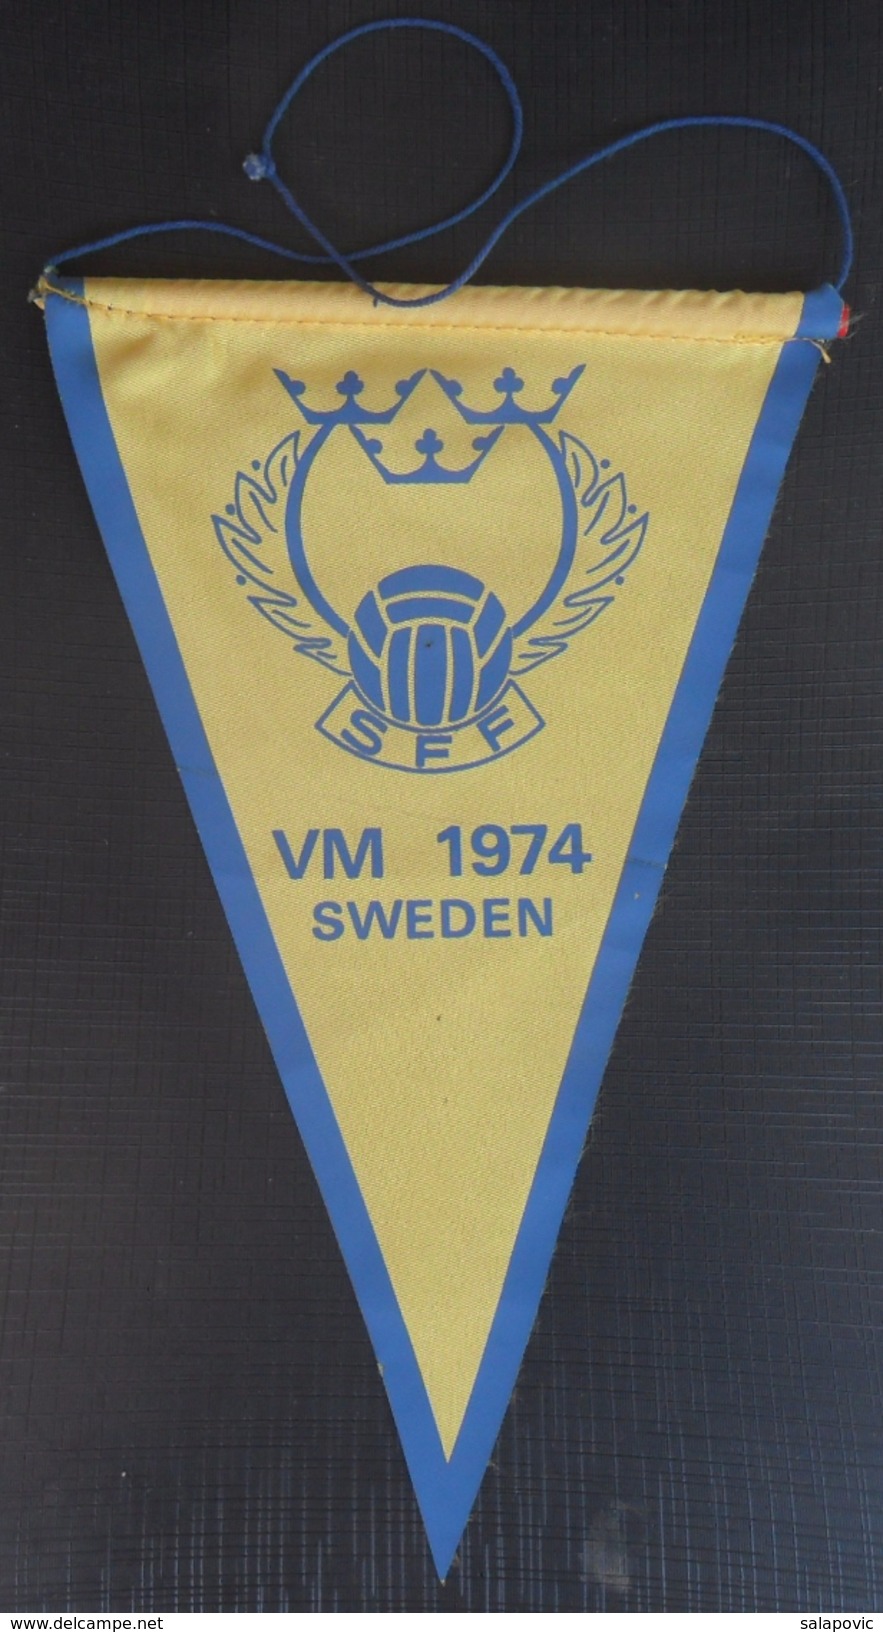 Sweden Football Federation VM 1974, World Cup Germany  FOOTBALL CLUB, SOCCER / FUTBOL / CALCIO, OLD PENNANT, SPORTS FLAG - Bekleidung, Souvenirs Und Sonstige